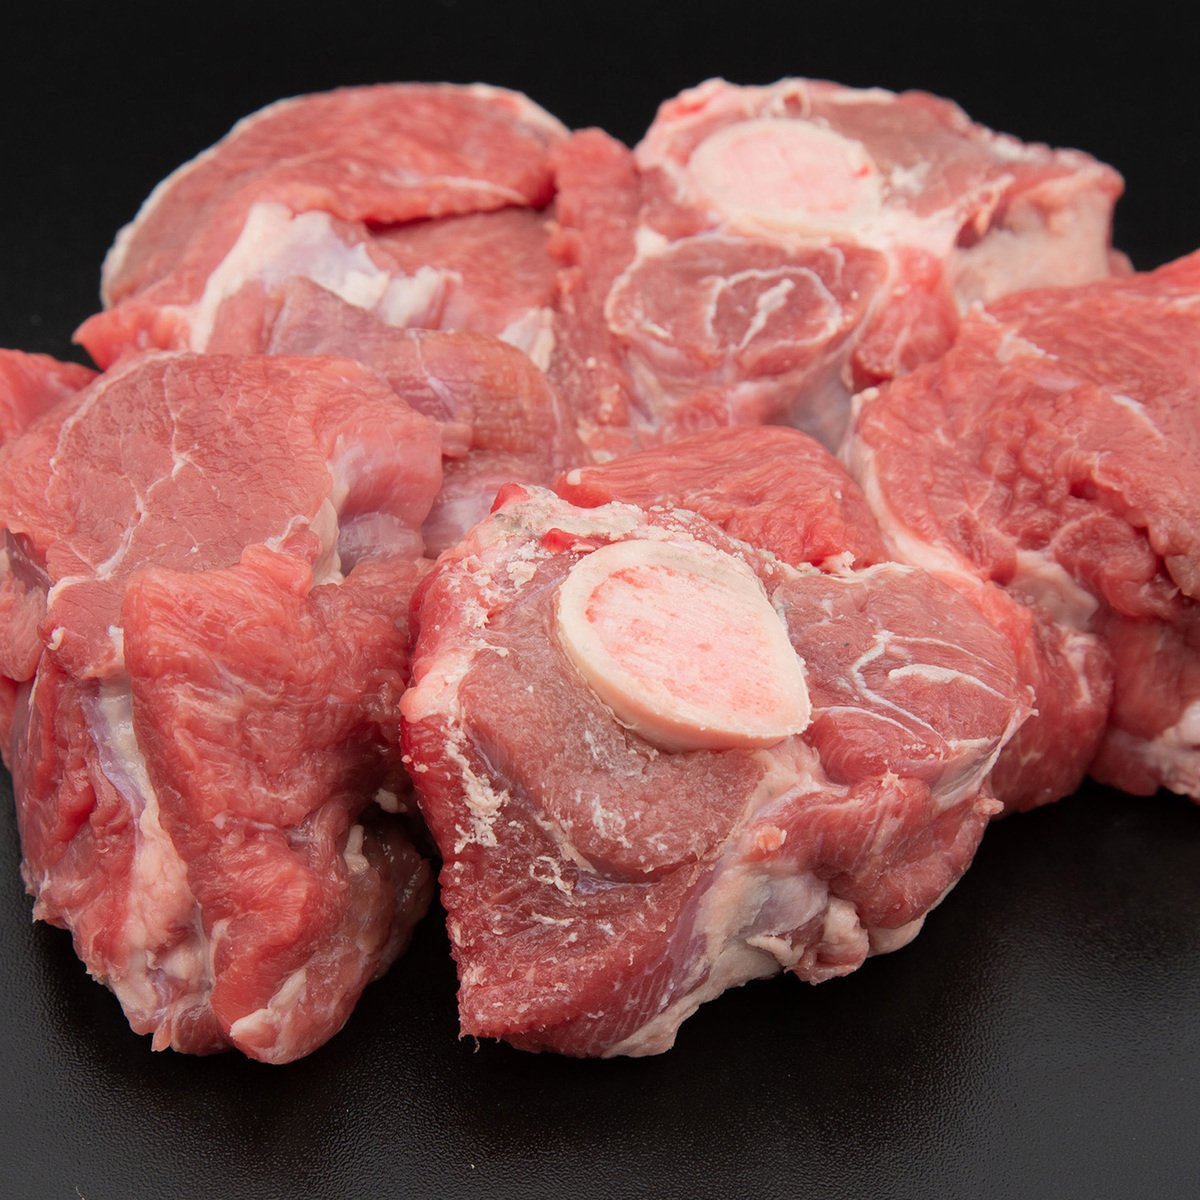 Pakistani Beef Shin Bone In 500 g